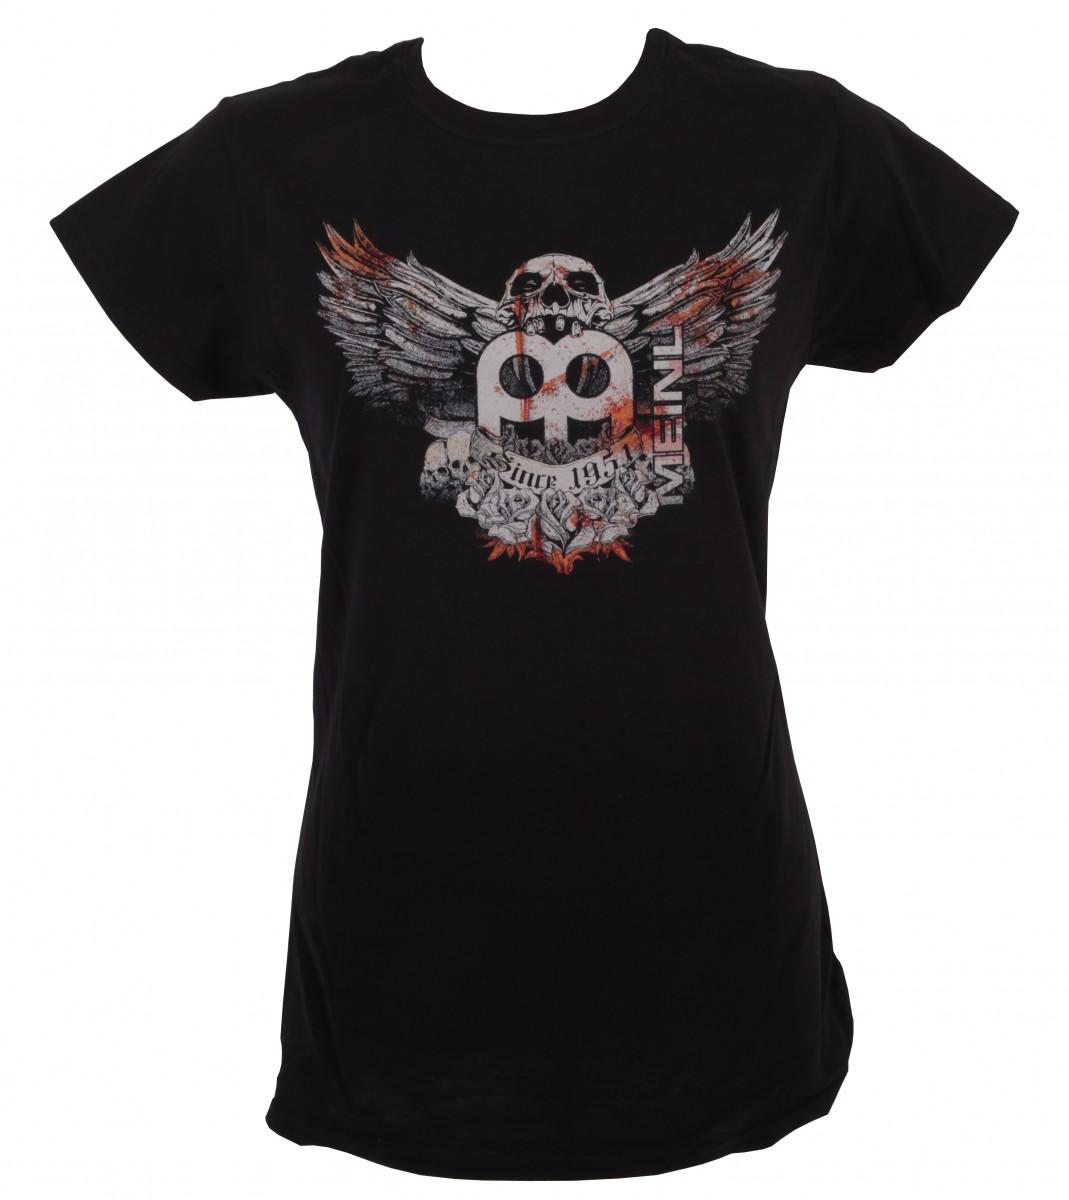 Jawbreaker Logo - Black Meinl t-shirt with imprinted Jawbreaker logo on chest - Girlie ...